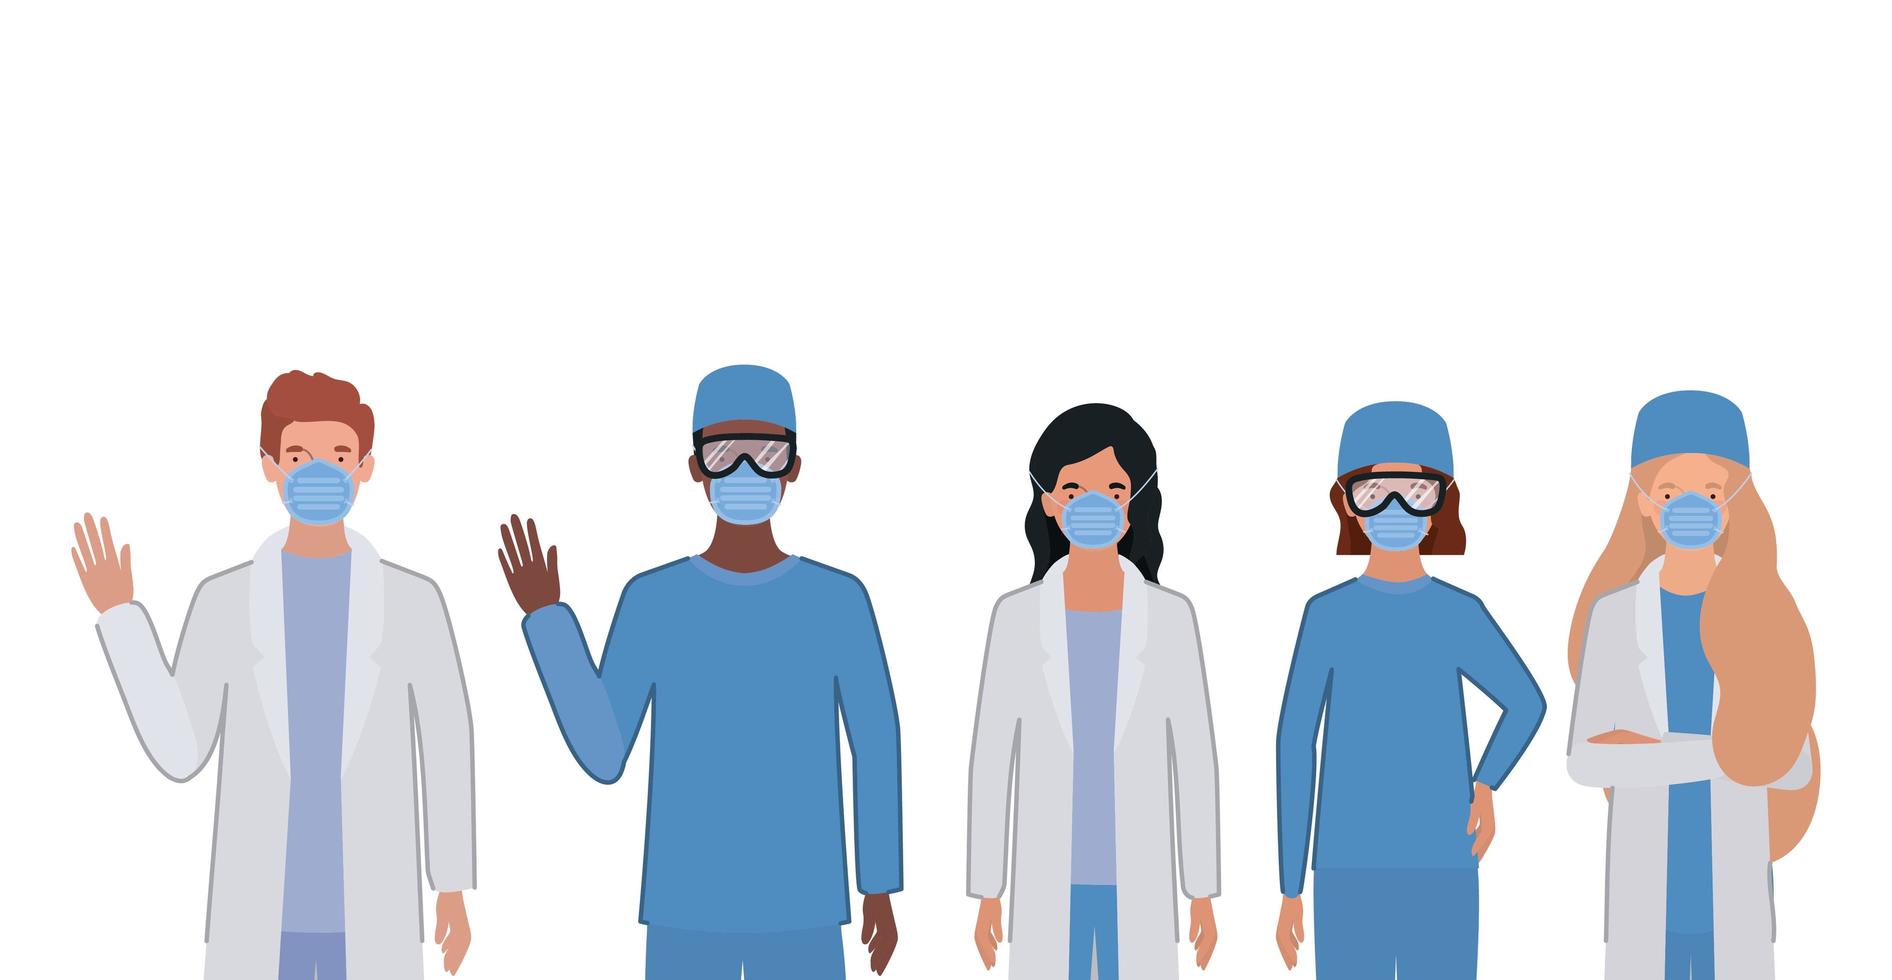 mannelijke en vrouwelijke artsen met uniformen en maskers vector